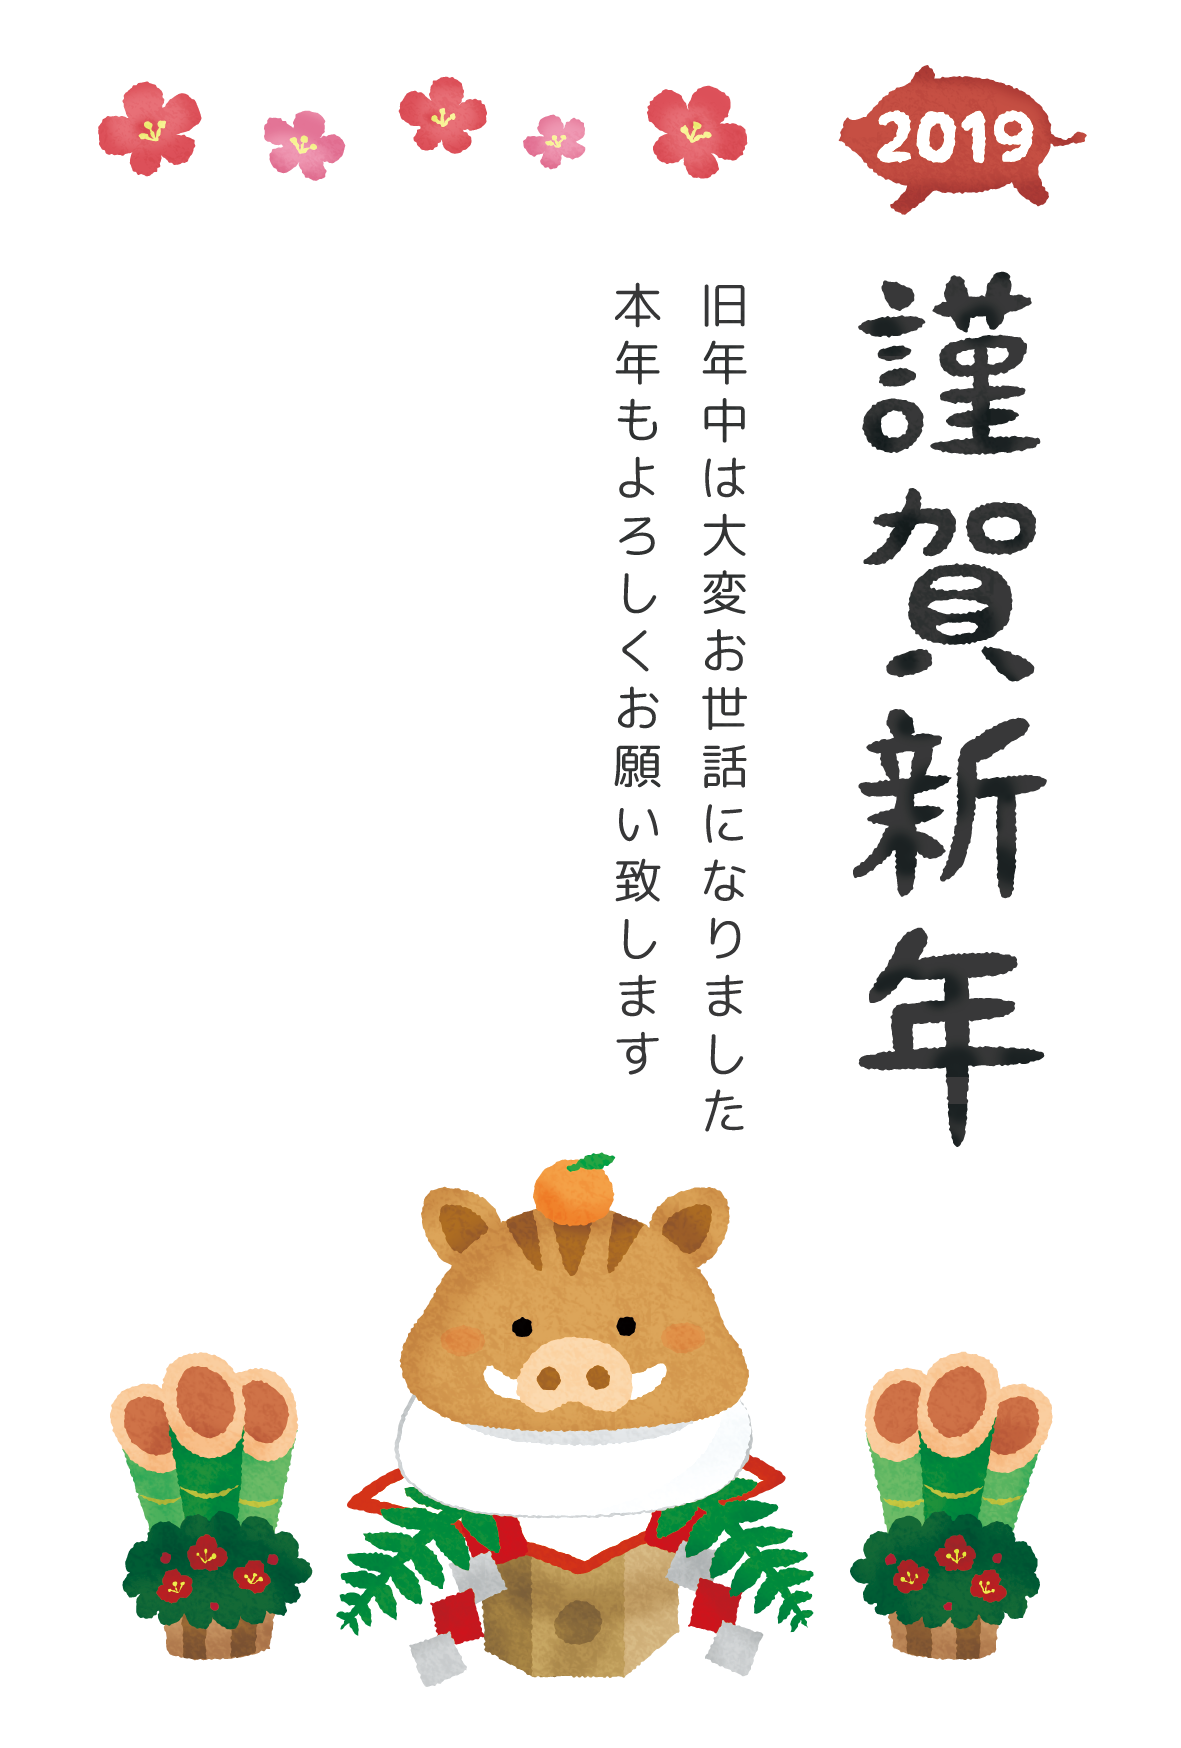 Kingashinnen Card Free Template (Boar kagami mochi)